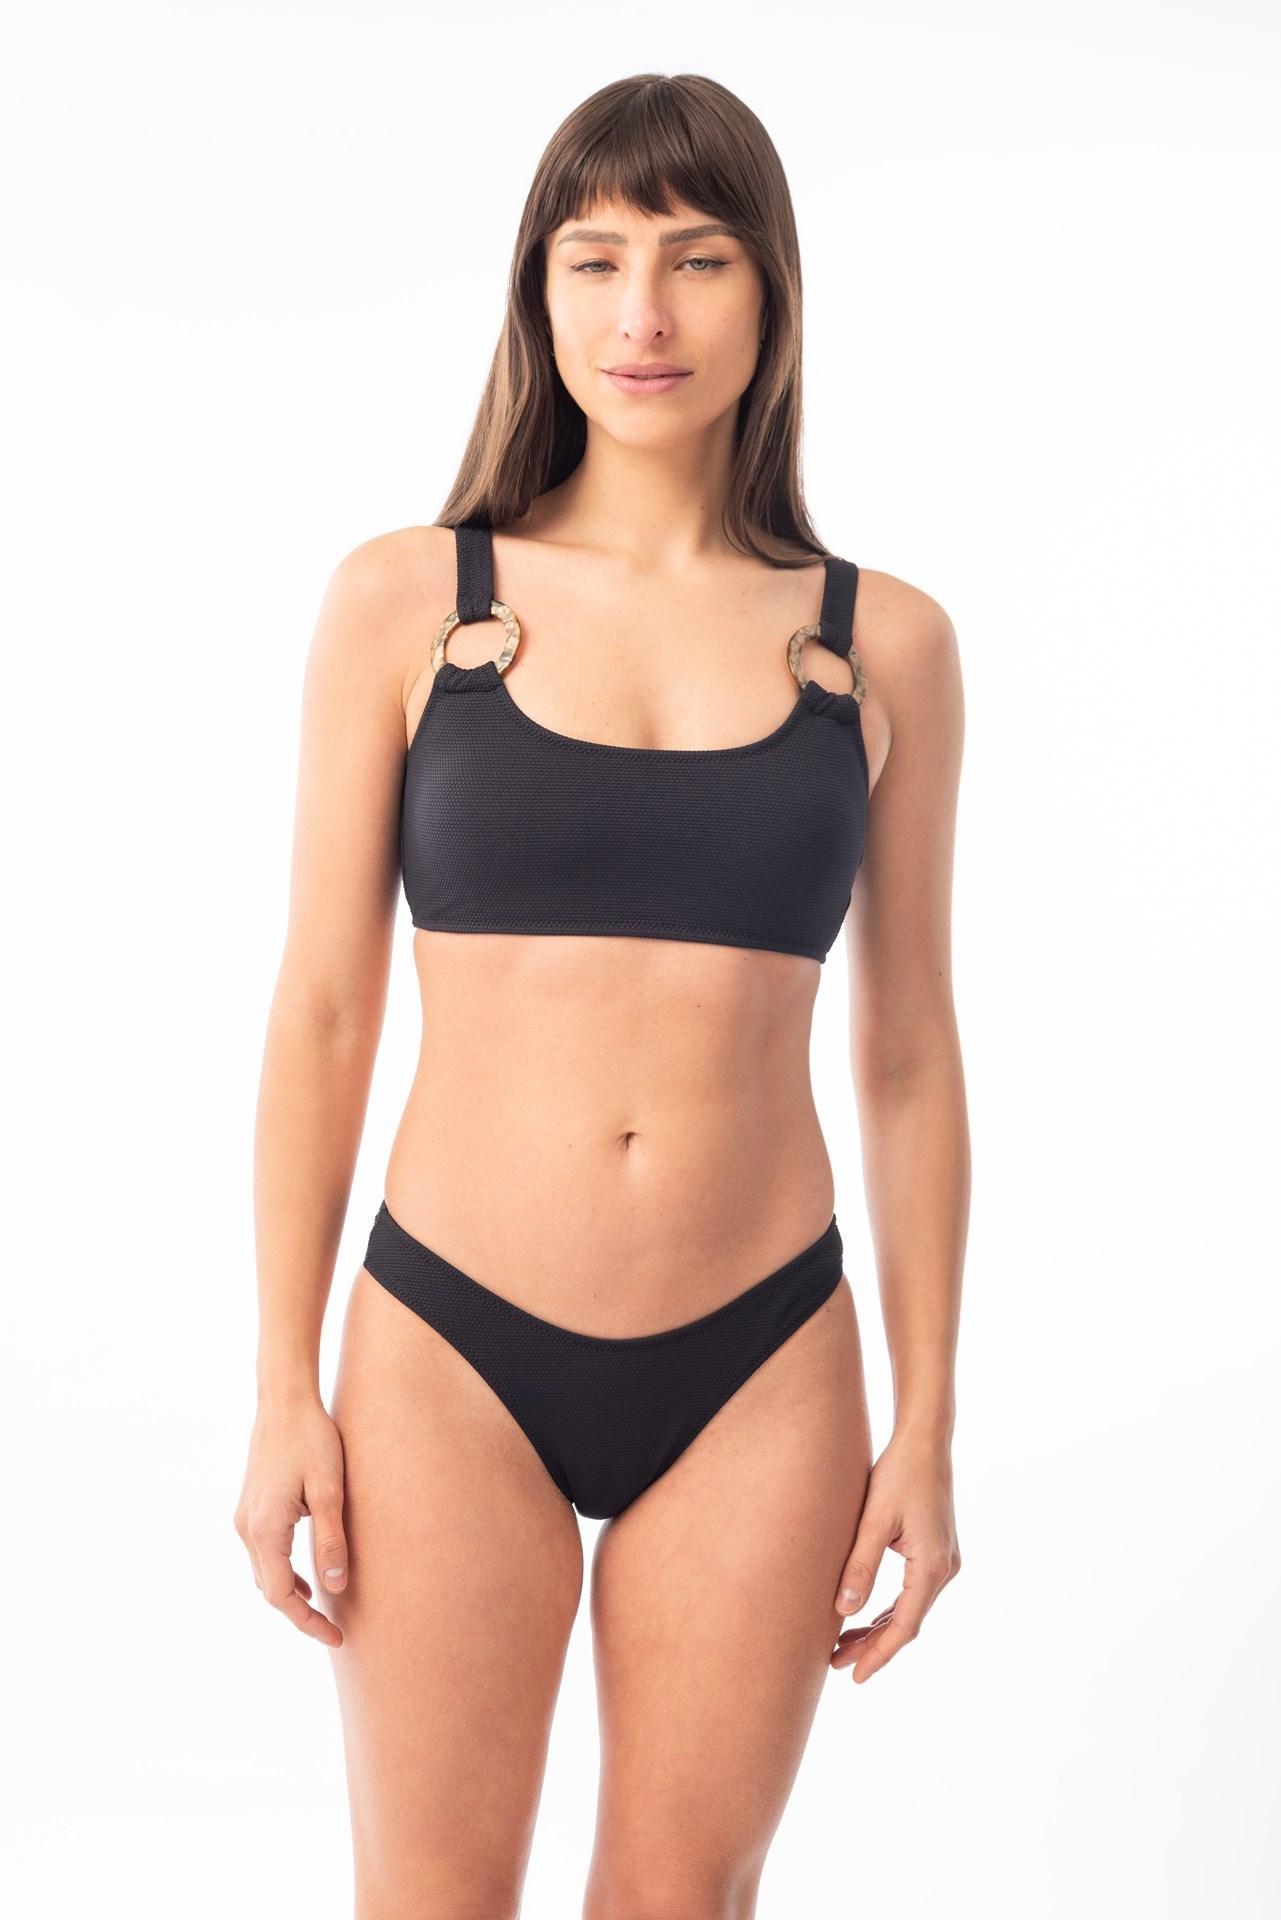 Paraiso- Bikini Top con Argollas negro s